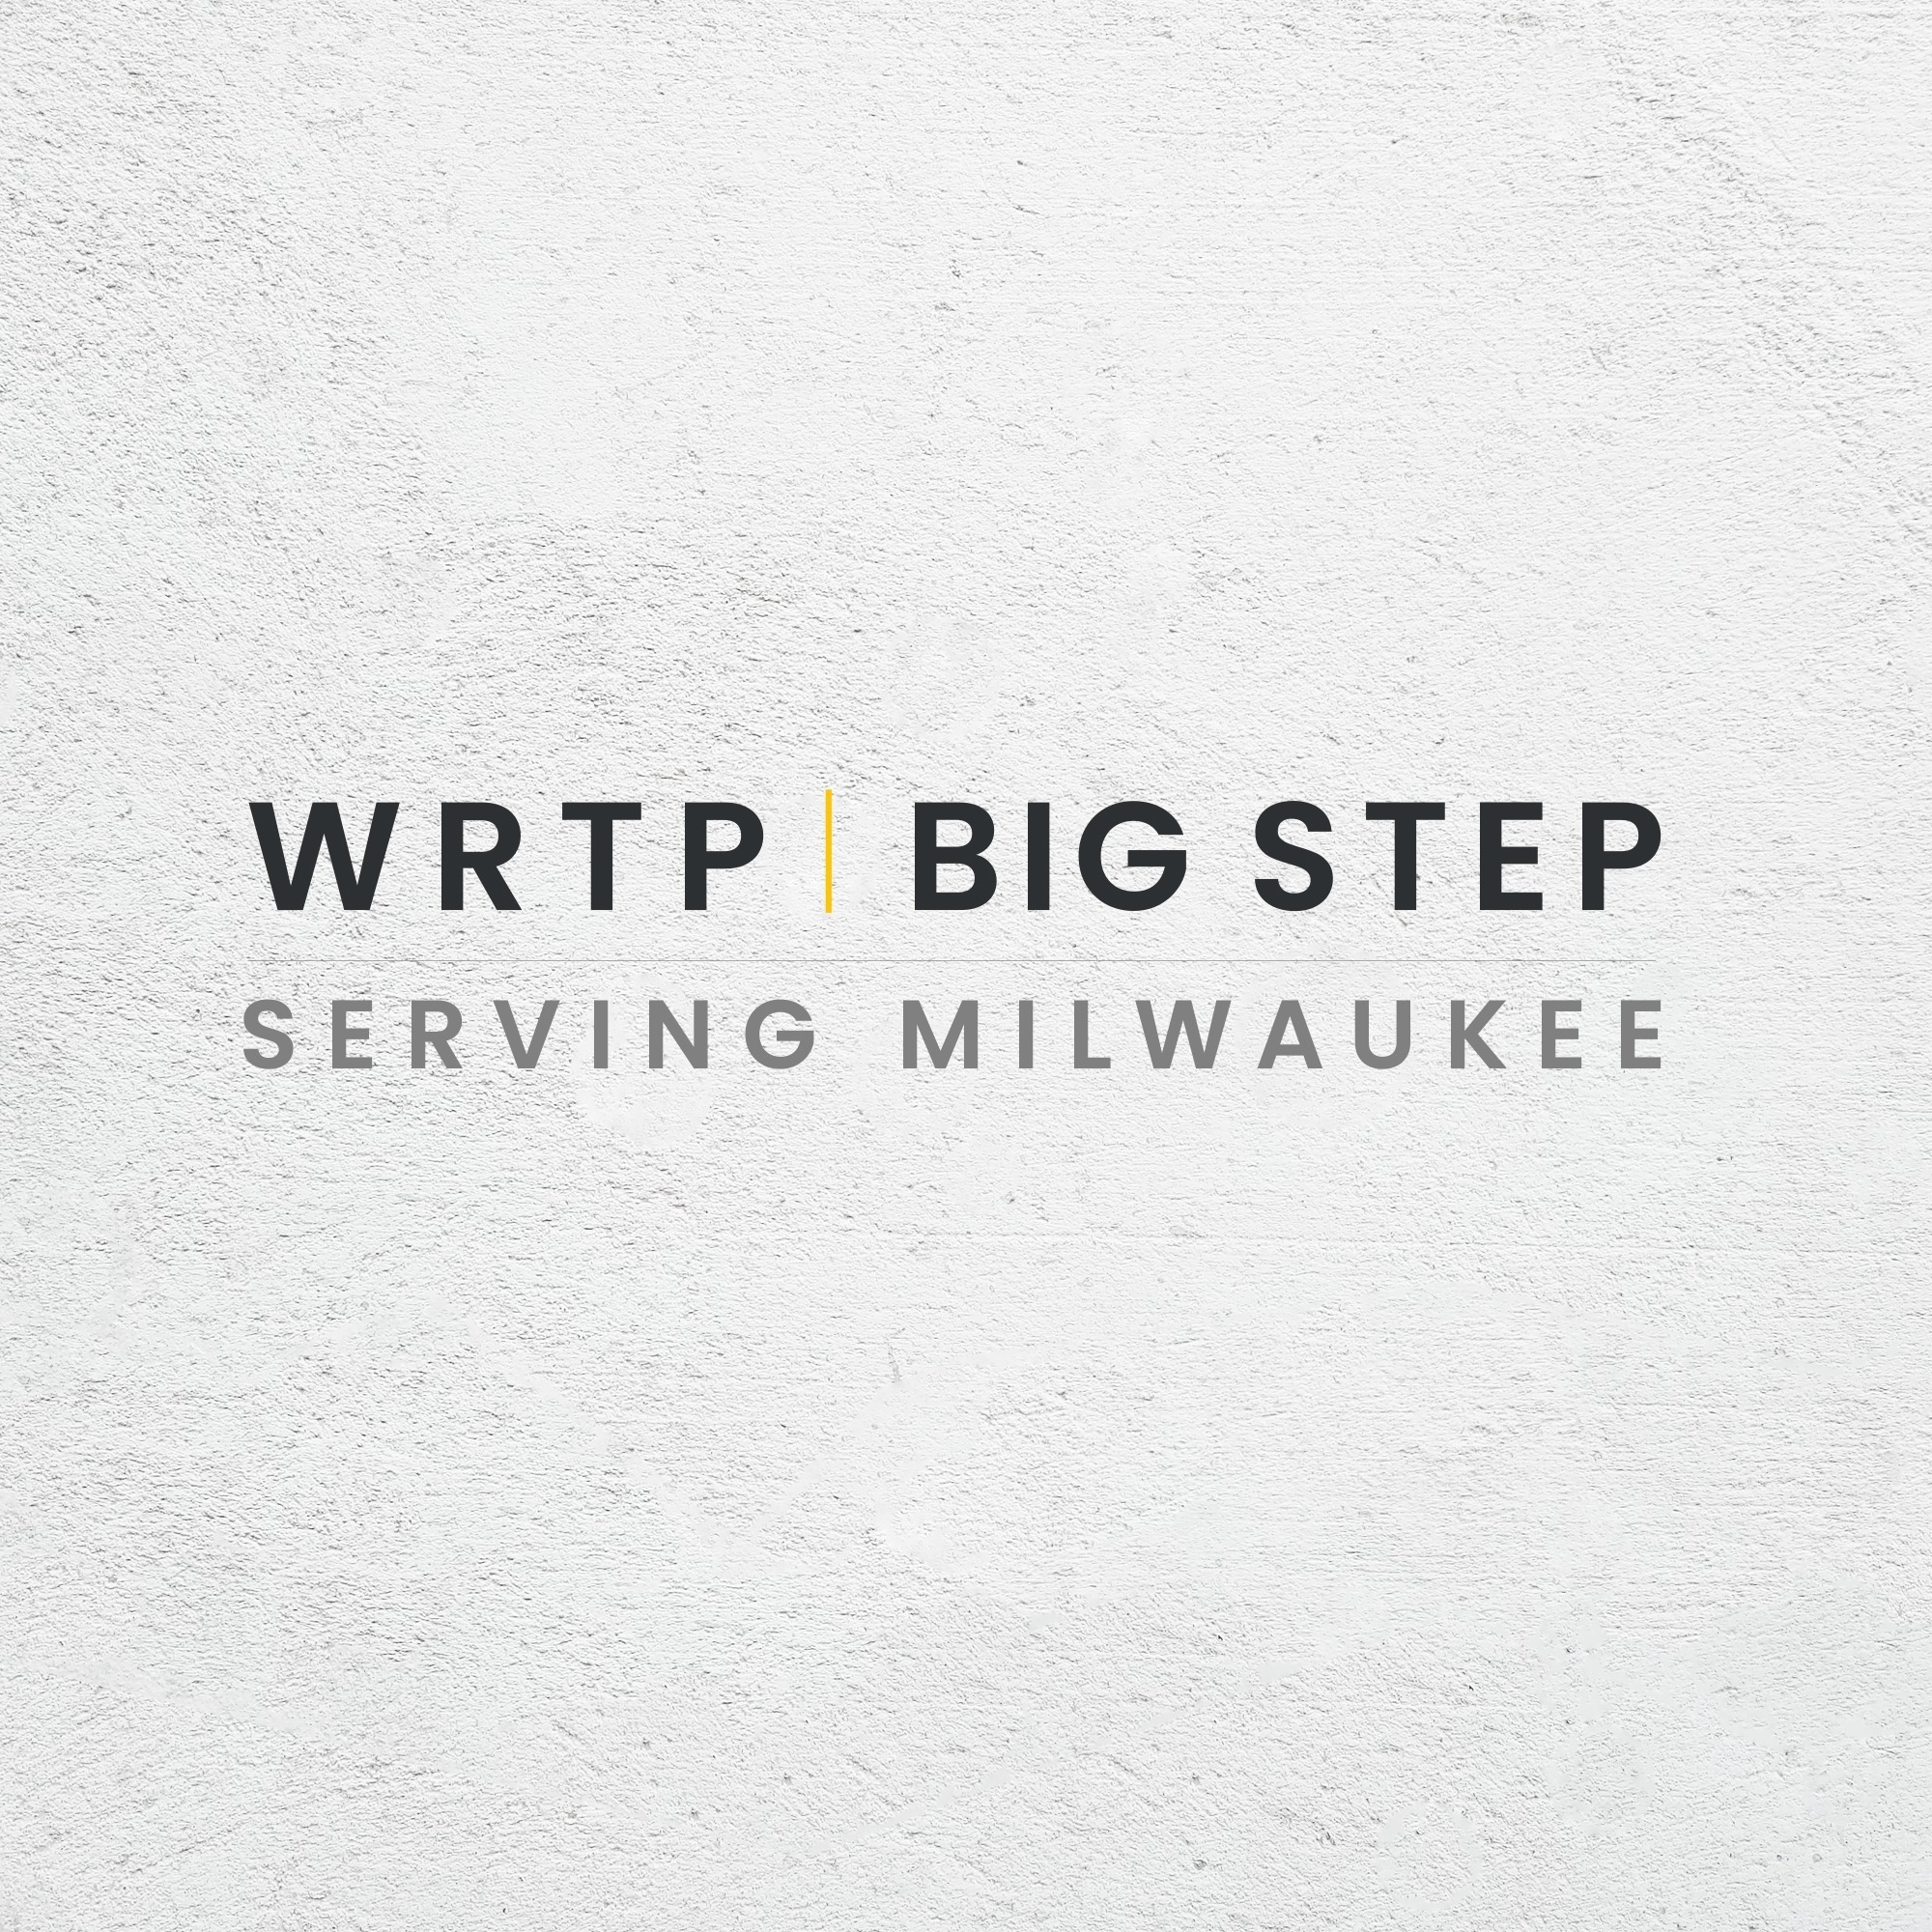 WRTP | BIG STEP